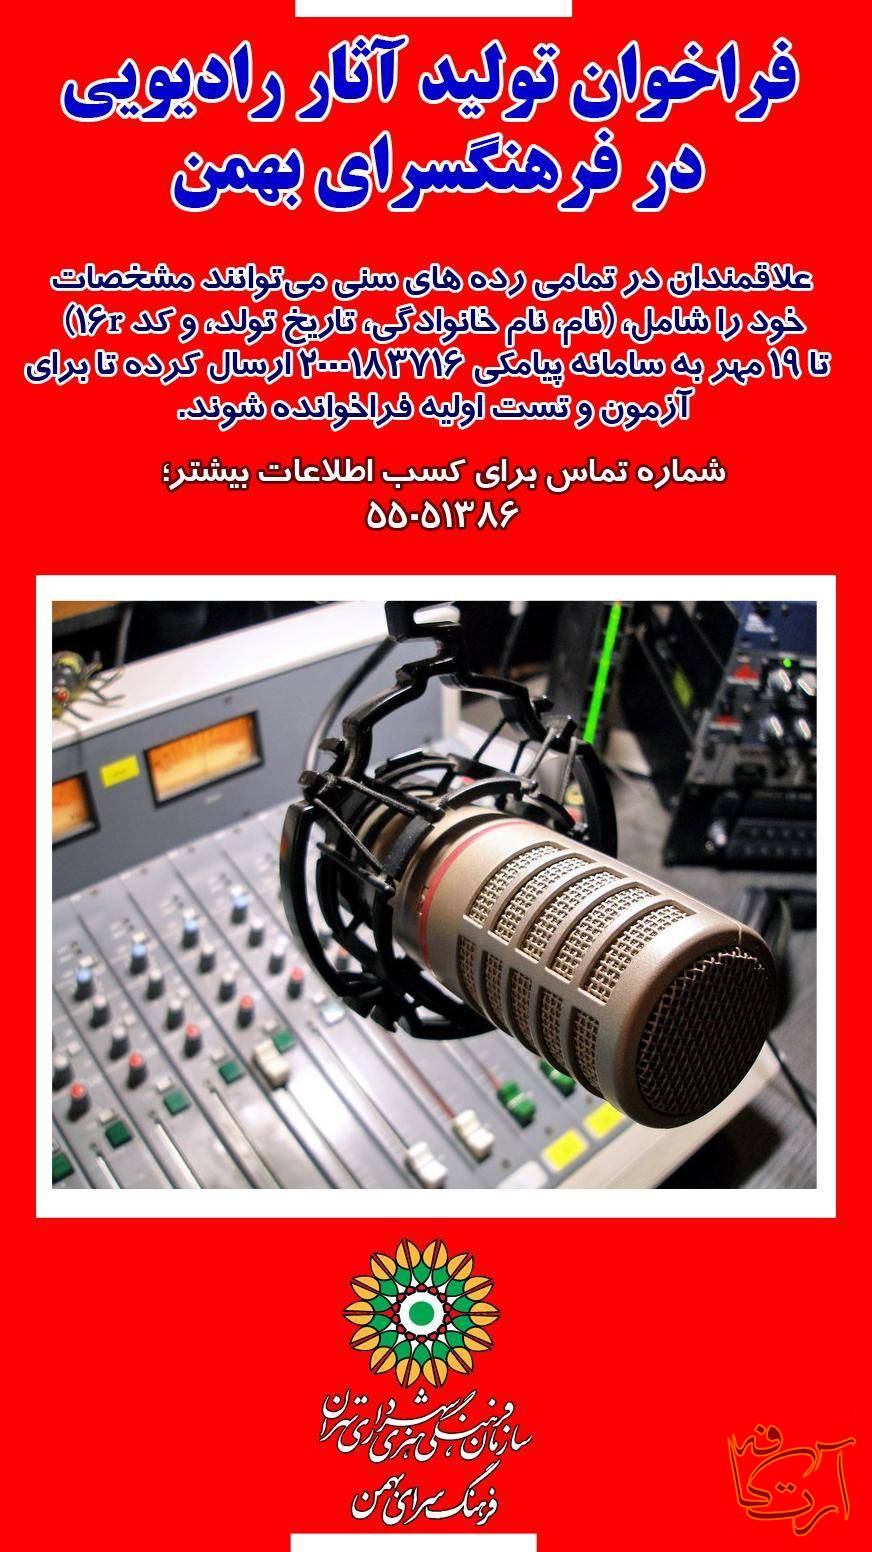 رادیو تلویزیون رادیو فرهنگسرای بهمن پادکست